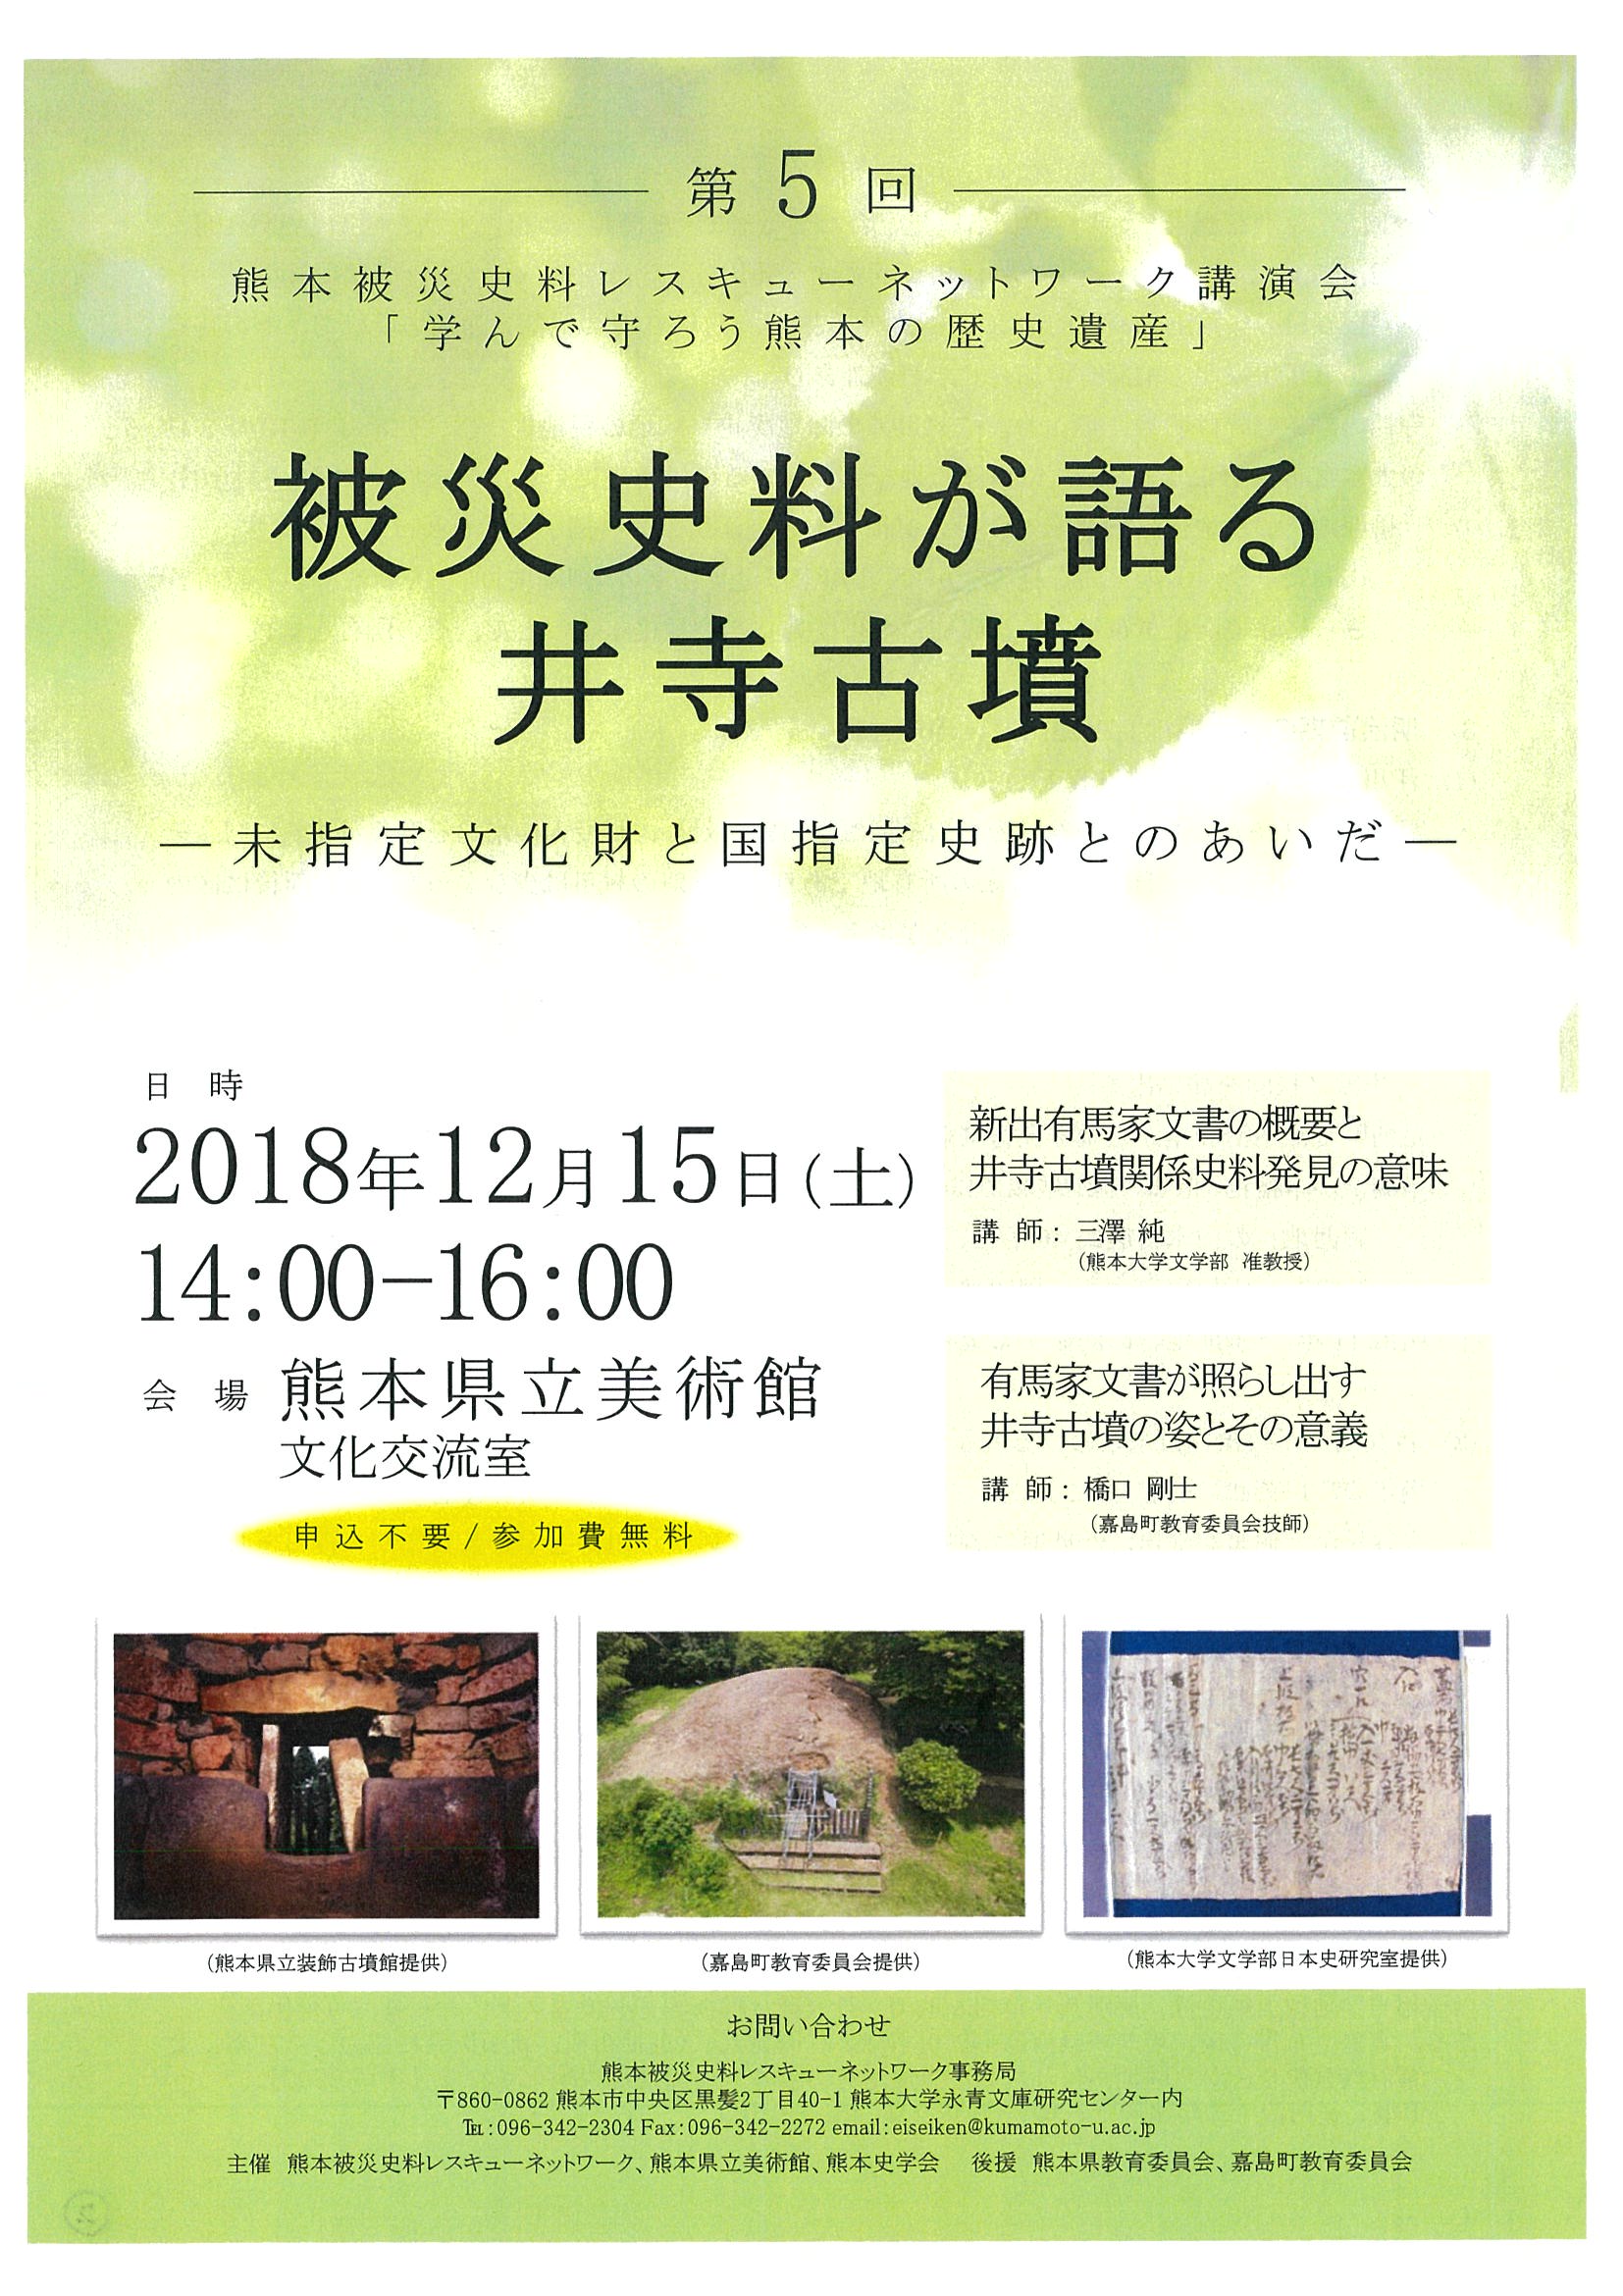 http://eisei.kumamoto-u.ac.jp/event/images/20181112111836-0001.jpg